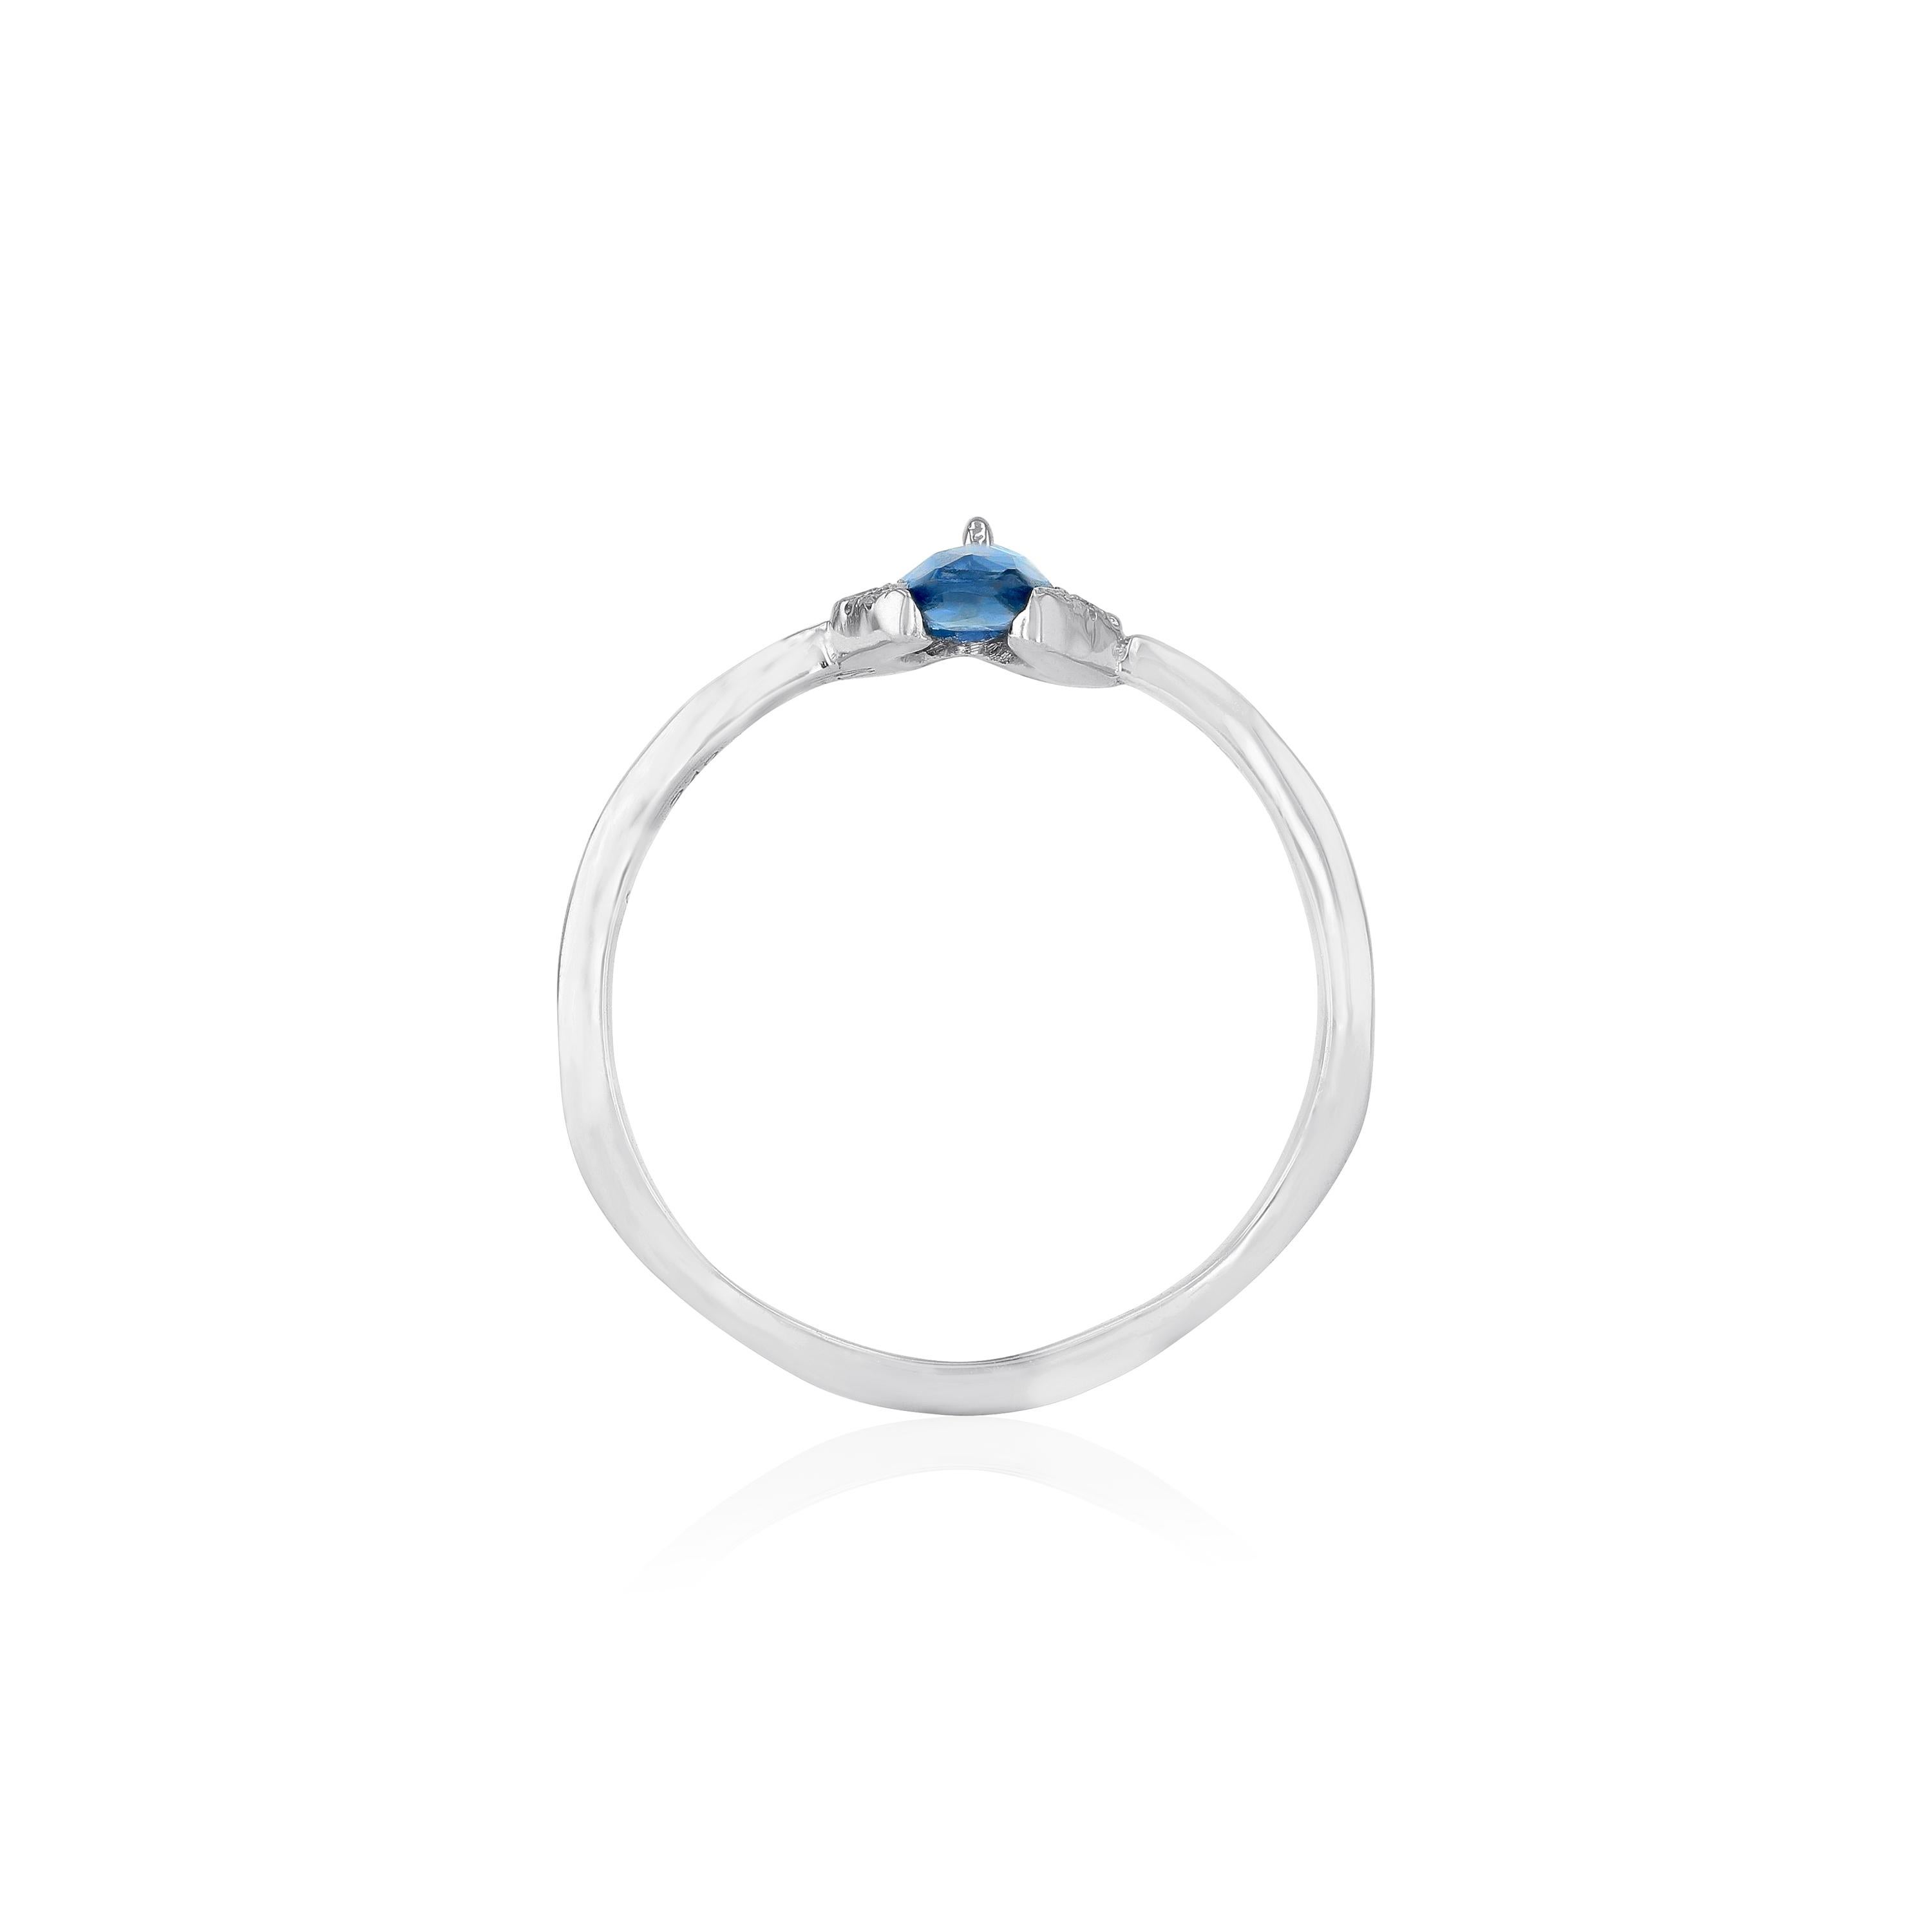 Inspiriert von den Arabesken und der islamischen Architektur ist dieser Ring aus 18 Karat Weißgold mit einem blauen Saphir und einem Marquise-Diamanten an der Spitze gefertigt. Kombinieren Sie ihn mit ähnlichen Modellen für einen Stacked-Look.
